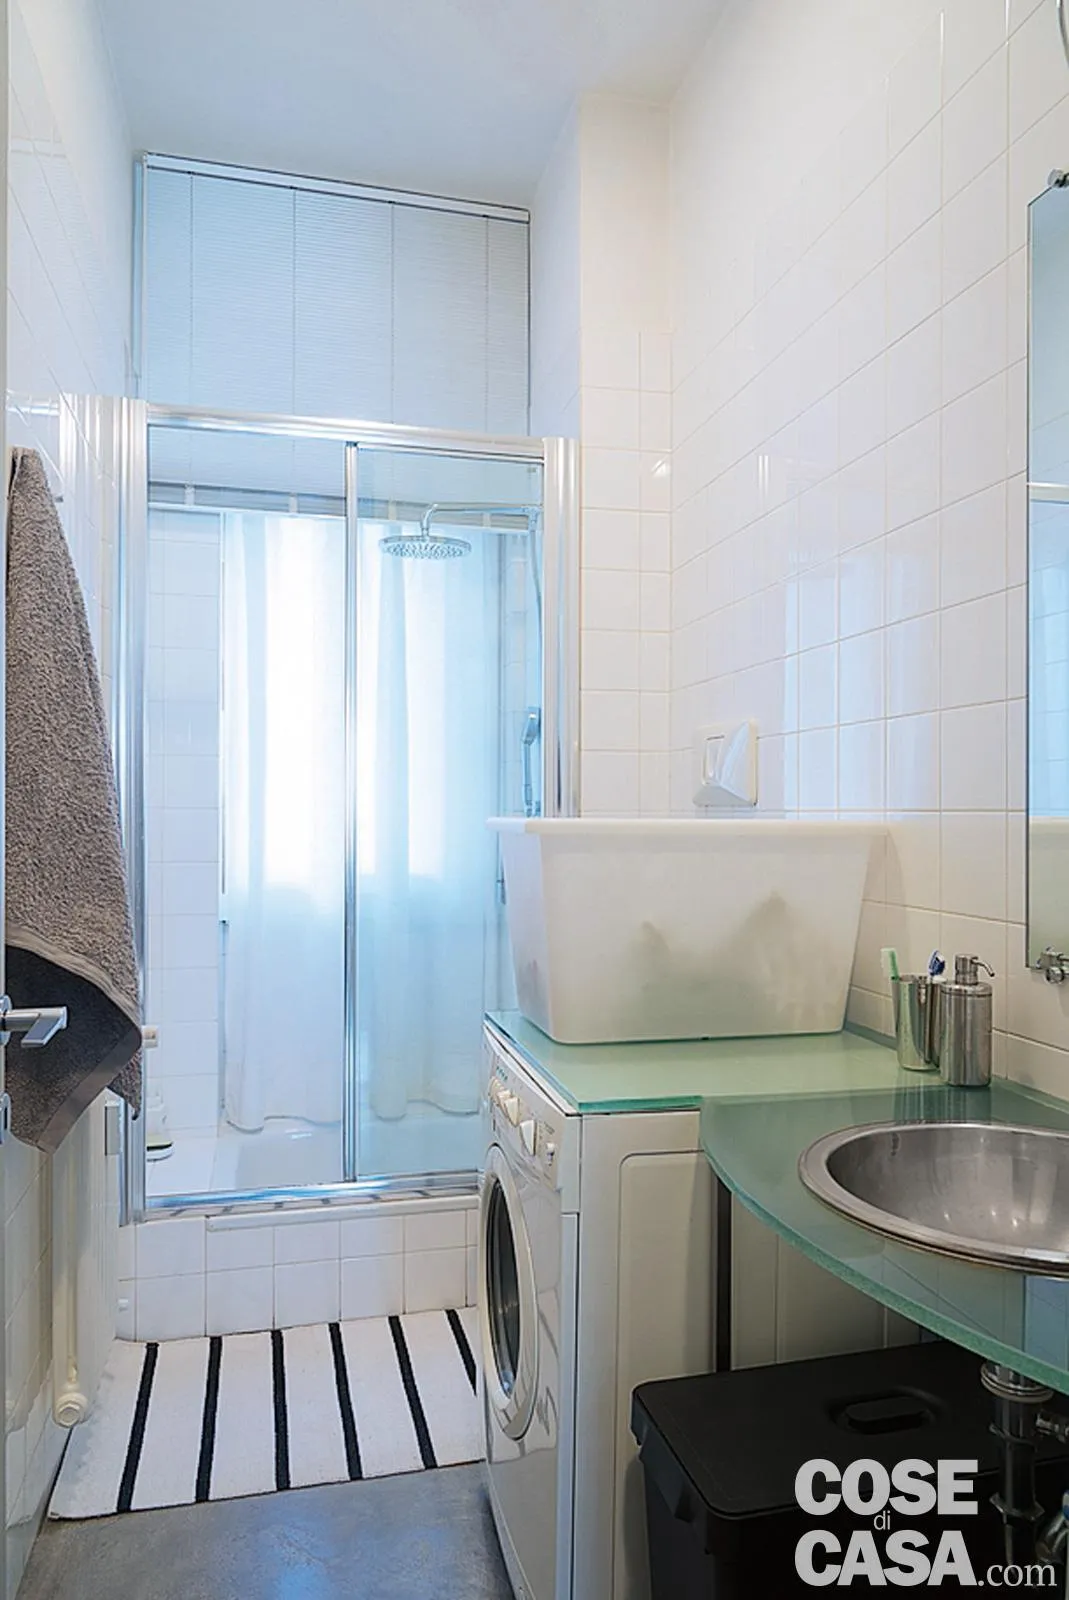 Bagno con specchio con struttura in metallo grigio lavabo in vetro su  supporti cromati cabina doccia con divisorio in vetro pavimento  piastrellato e finestra in alluminio bianco